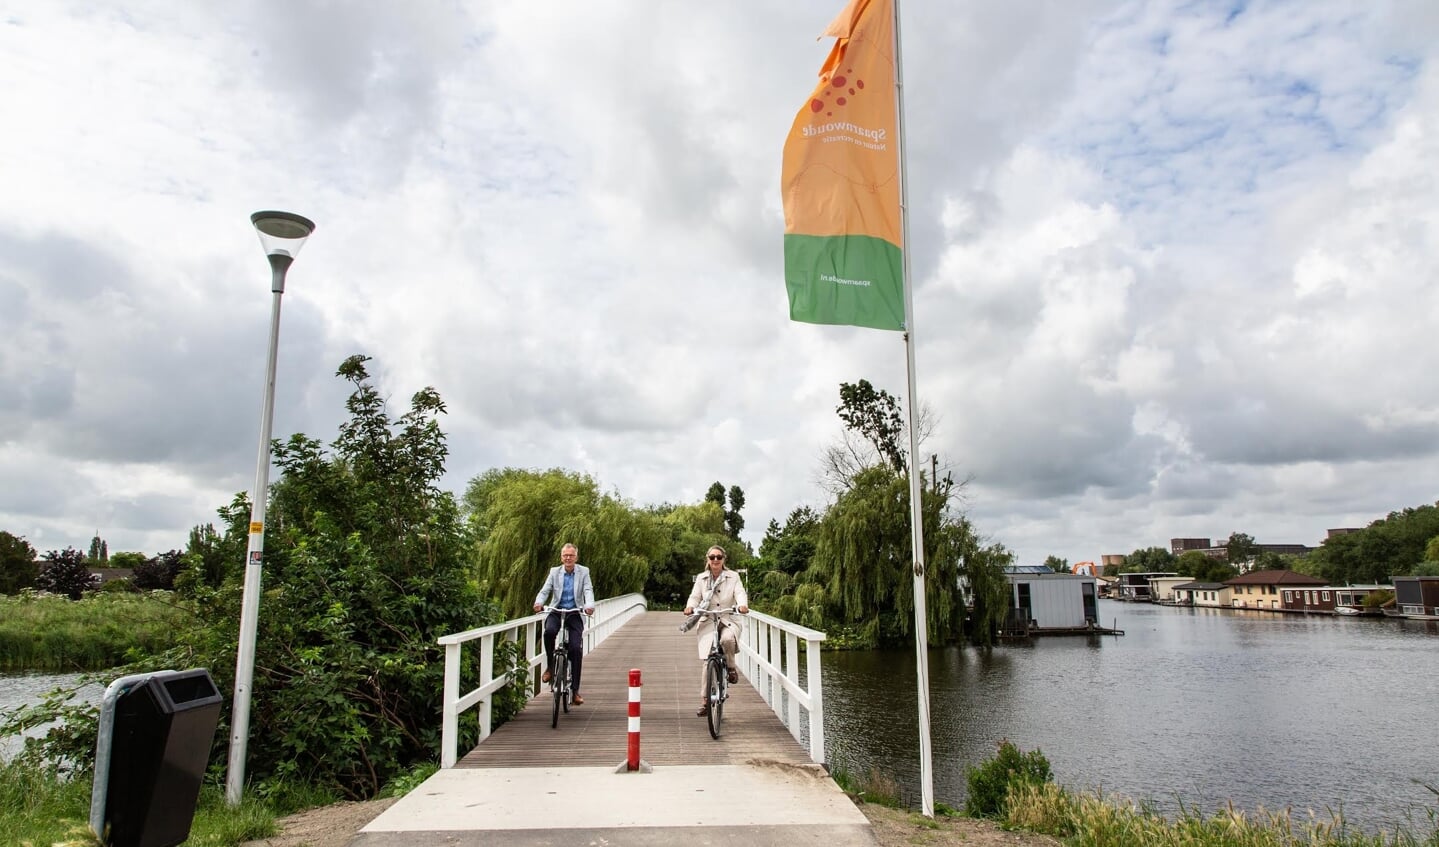 Wethouder Mariëtte Sedee en Marco Kastelein van het hoogheemraadschap nemen de vernieuwde brug in gebruik.